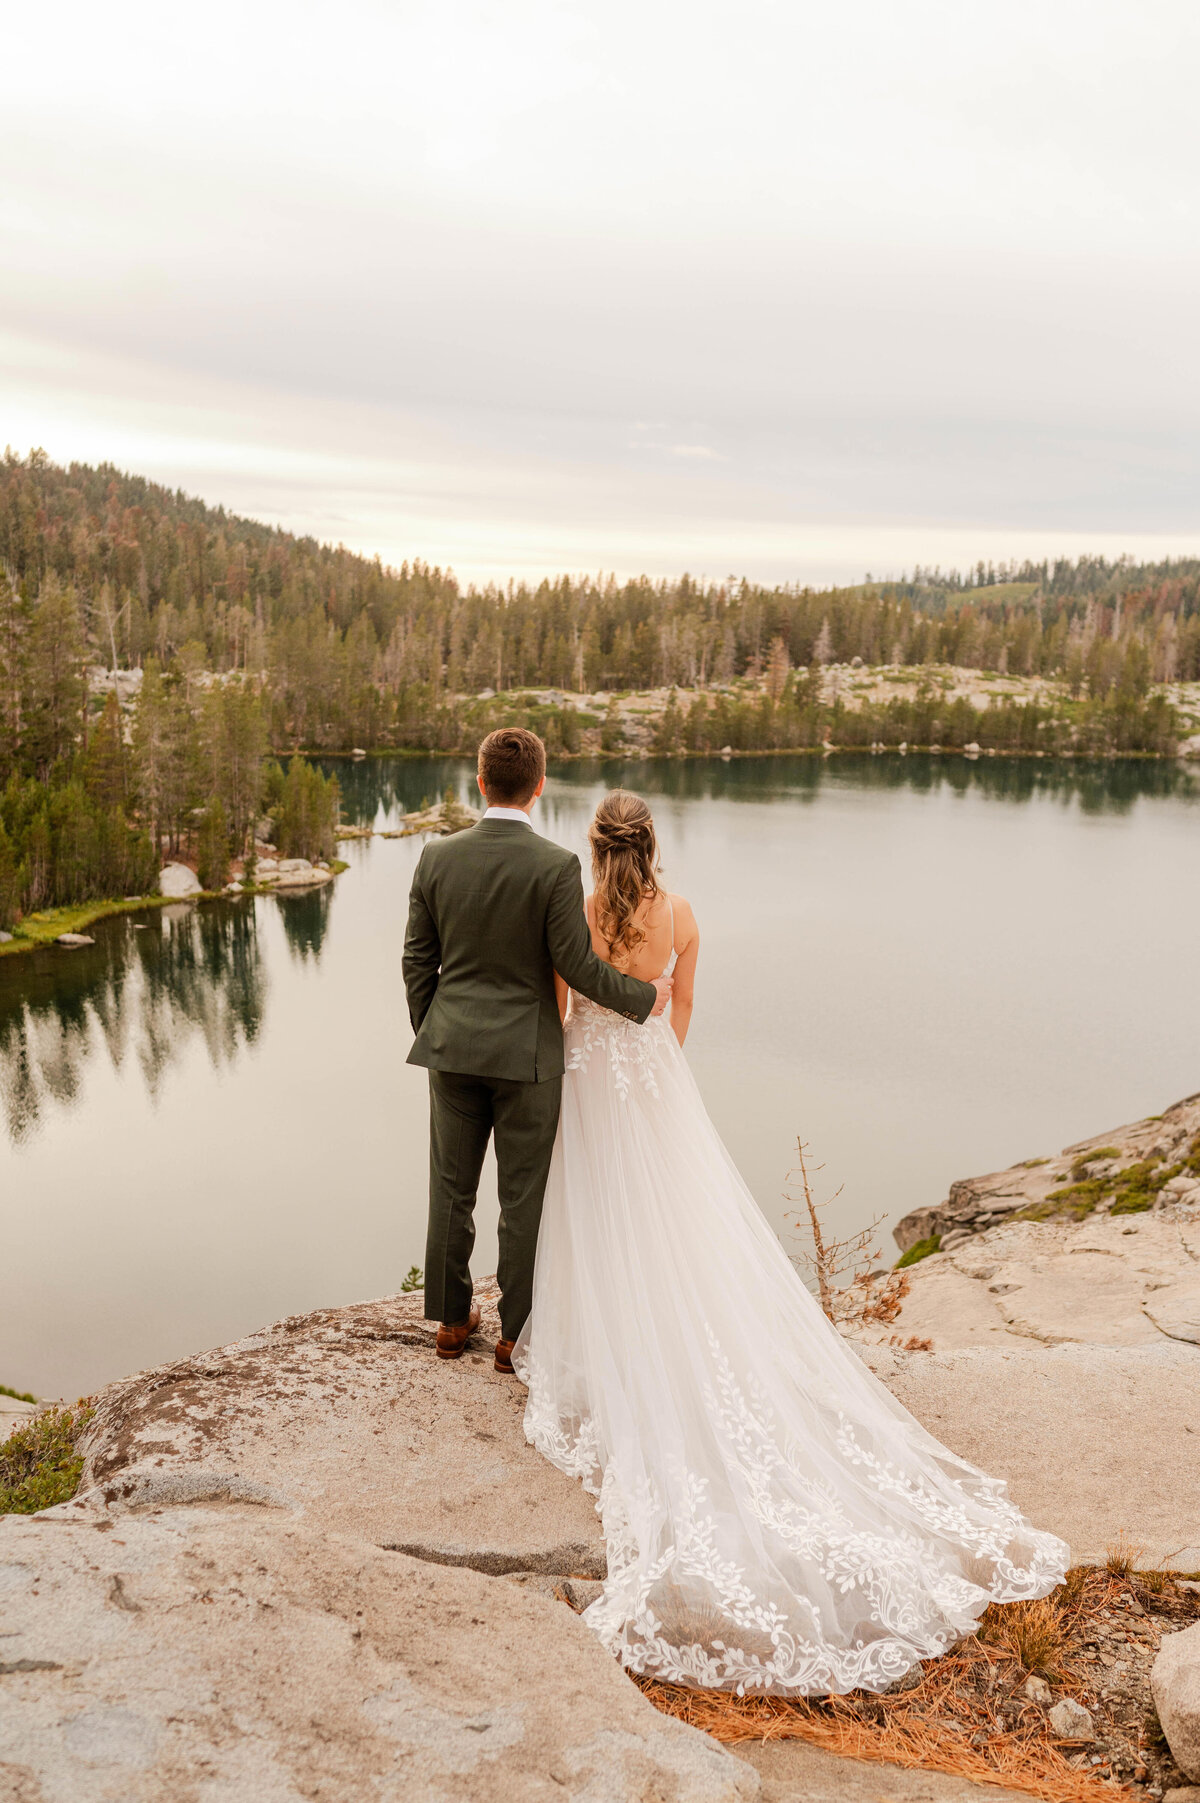 Lake tahoe elopement photographer, Lake Tahoe wedding photographer, wedding photography in Lake Tahoe, Elopement photographer Lake Tahoe